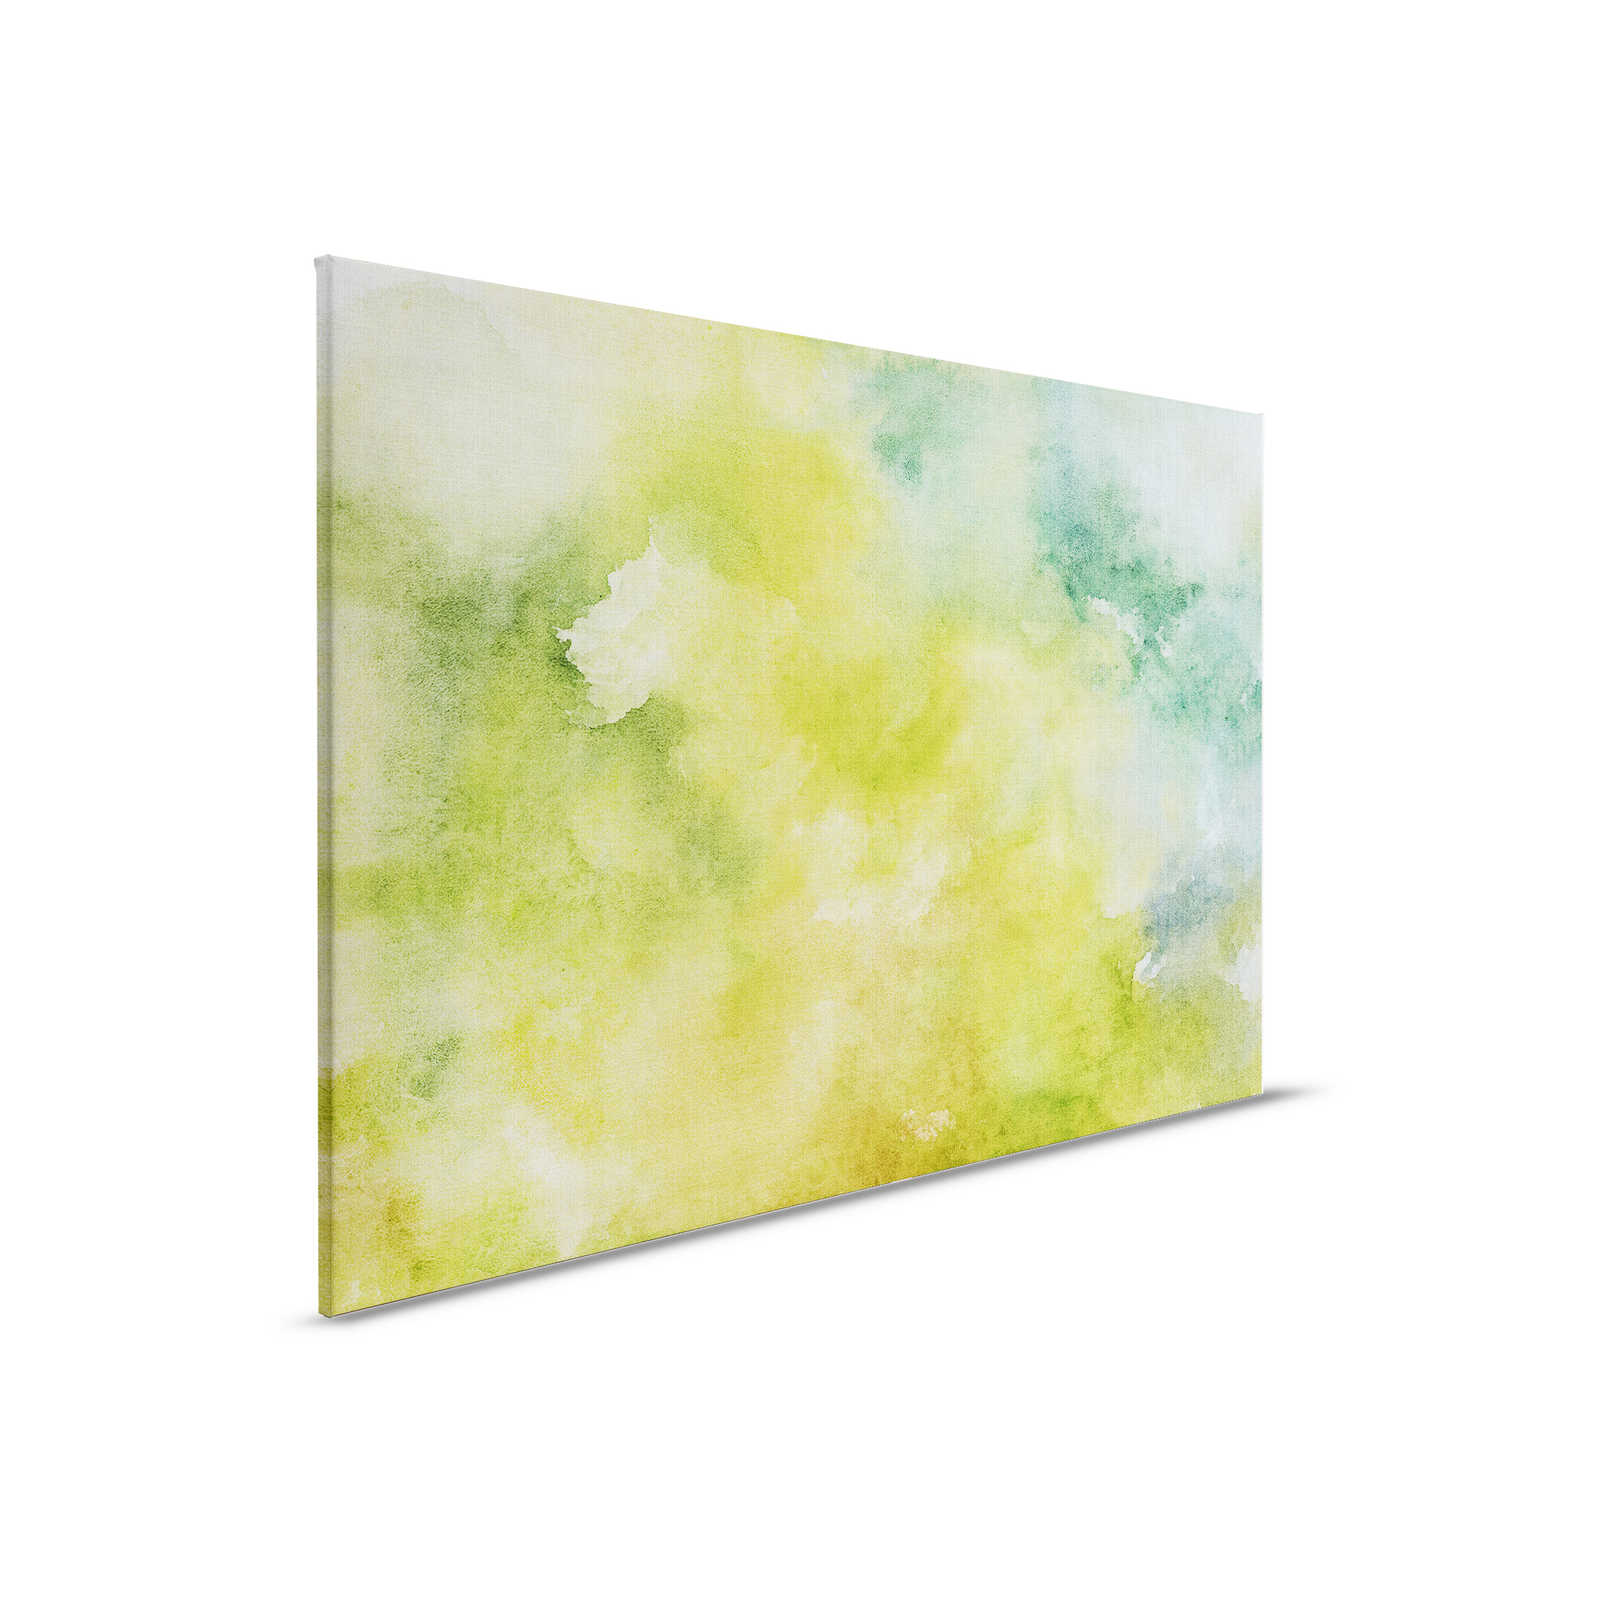 Acquerelli 3 - Motivo acquerello verde come quadro su tela in lino naturale - 0,90 m x 0,60 m
